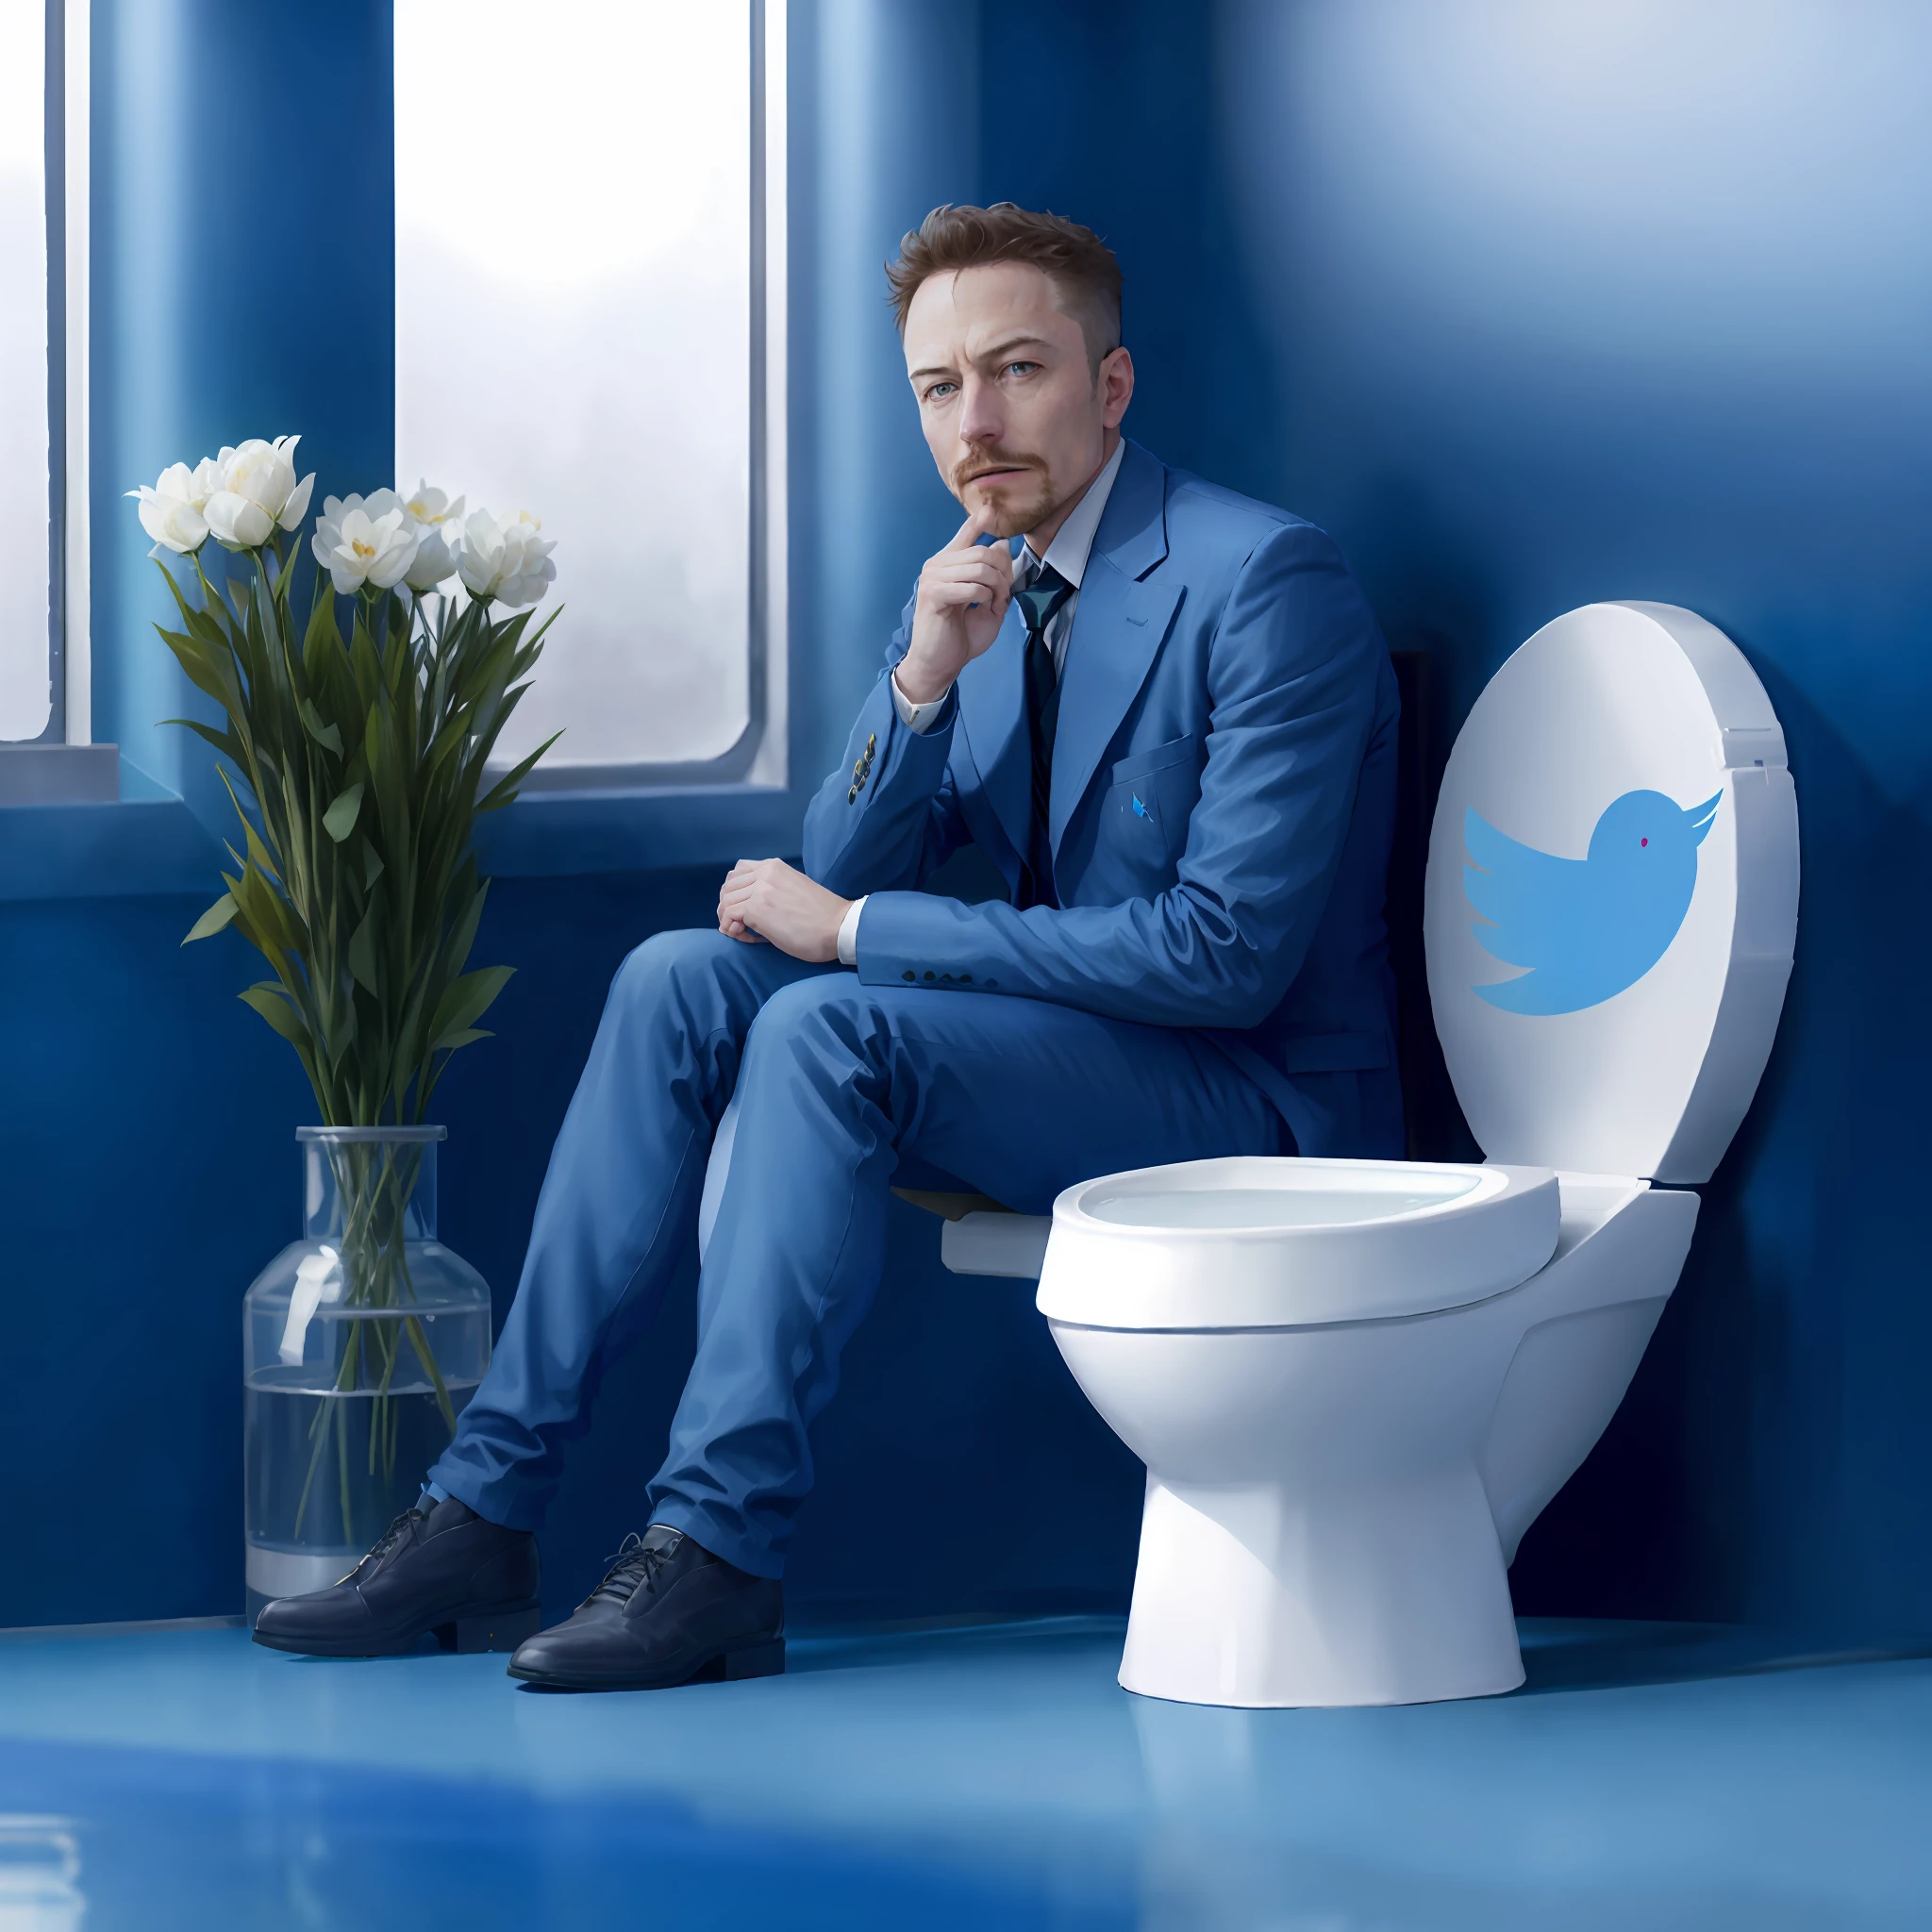 Arafed Ellon Musk em um terno azul sentado em um vaso sanitário com um logotipo do Twitter no tanque, Elon Musk as joker, Elon Musk as a greek god, Elon Musk as a musketeer, Elon Musk in fortnite, Tendência no Twitter, Elon Musk, viral no twitter, Elon Musk as thor, , black Elon Musk, cadeira de jogos como banheiro, banheiro de jogos